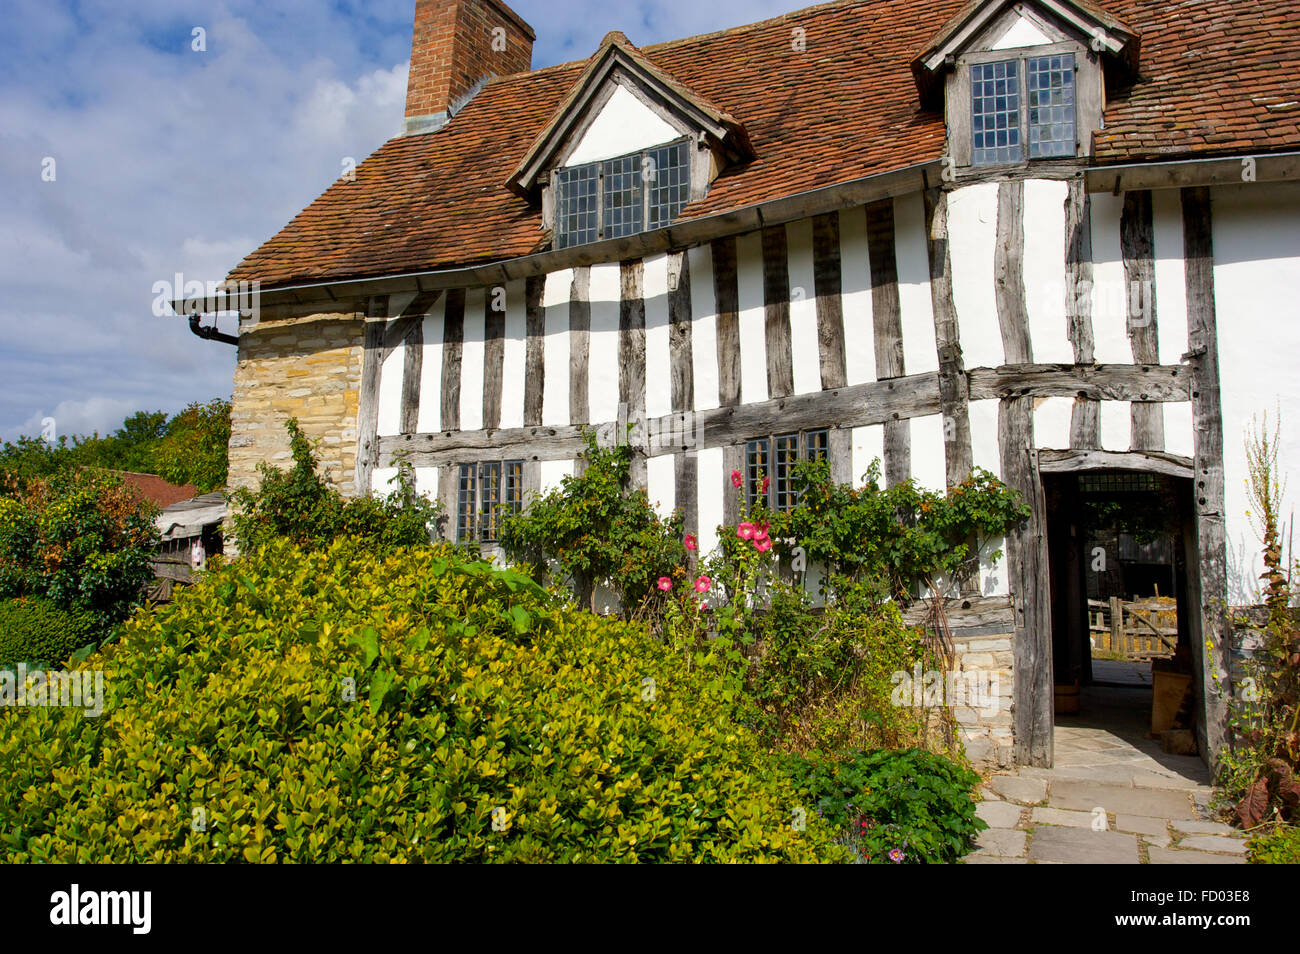 Mary Arden’s Farm était autrefois la maison de William Shakespeare à Stratford-upon-Avon, au Royaume-Uni Banque D'Images